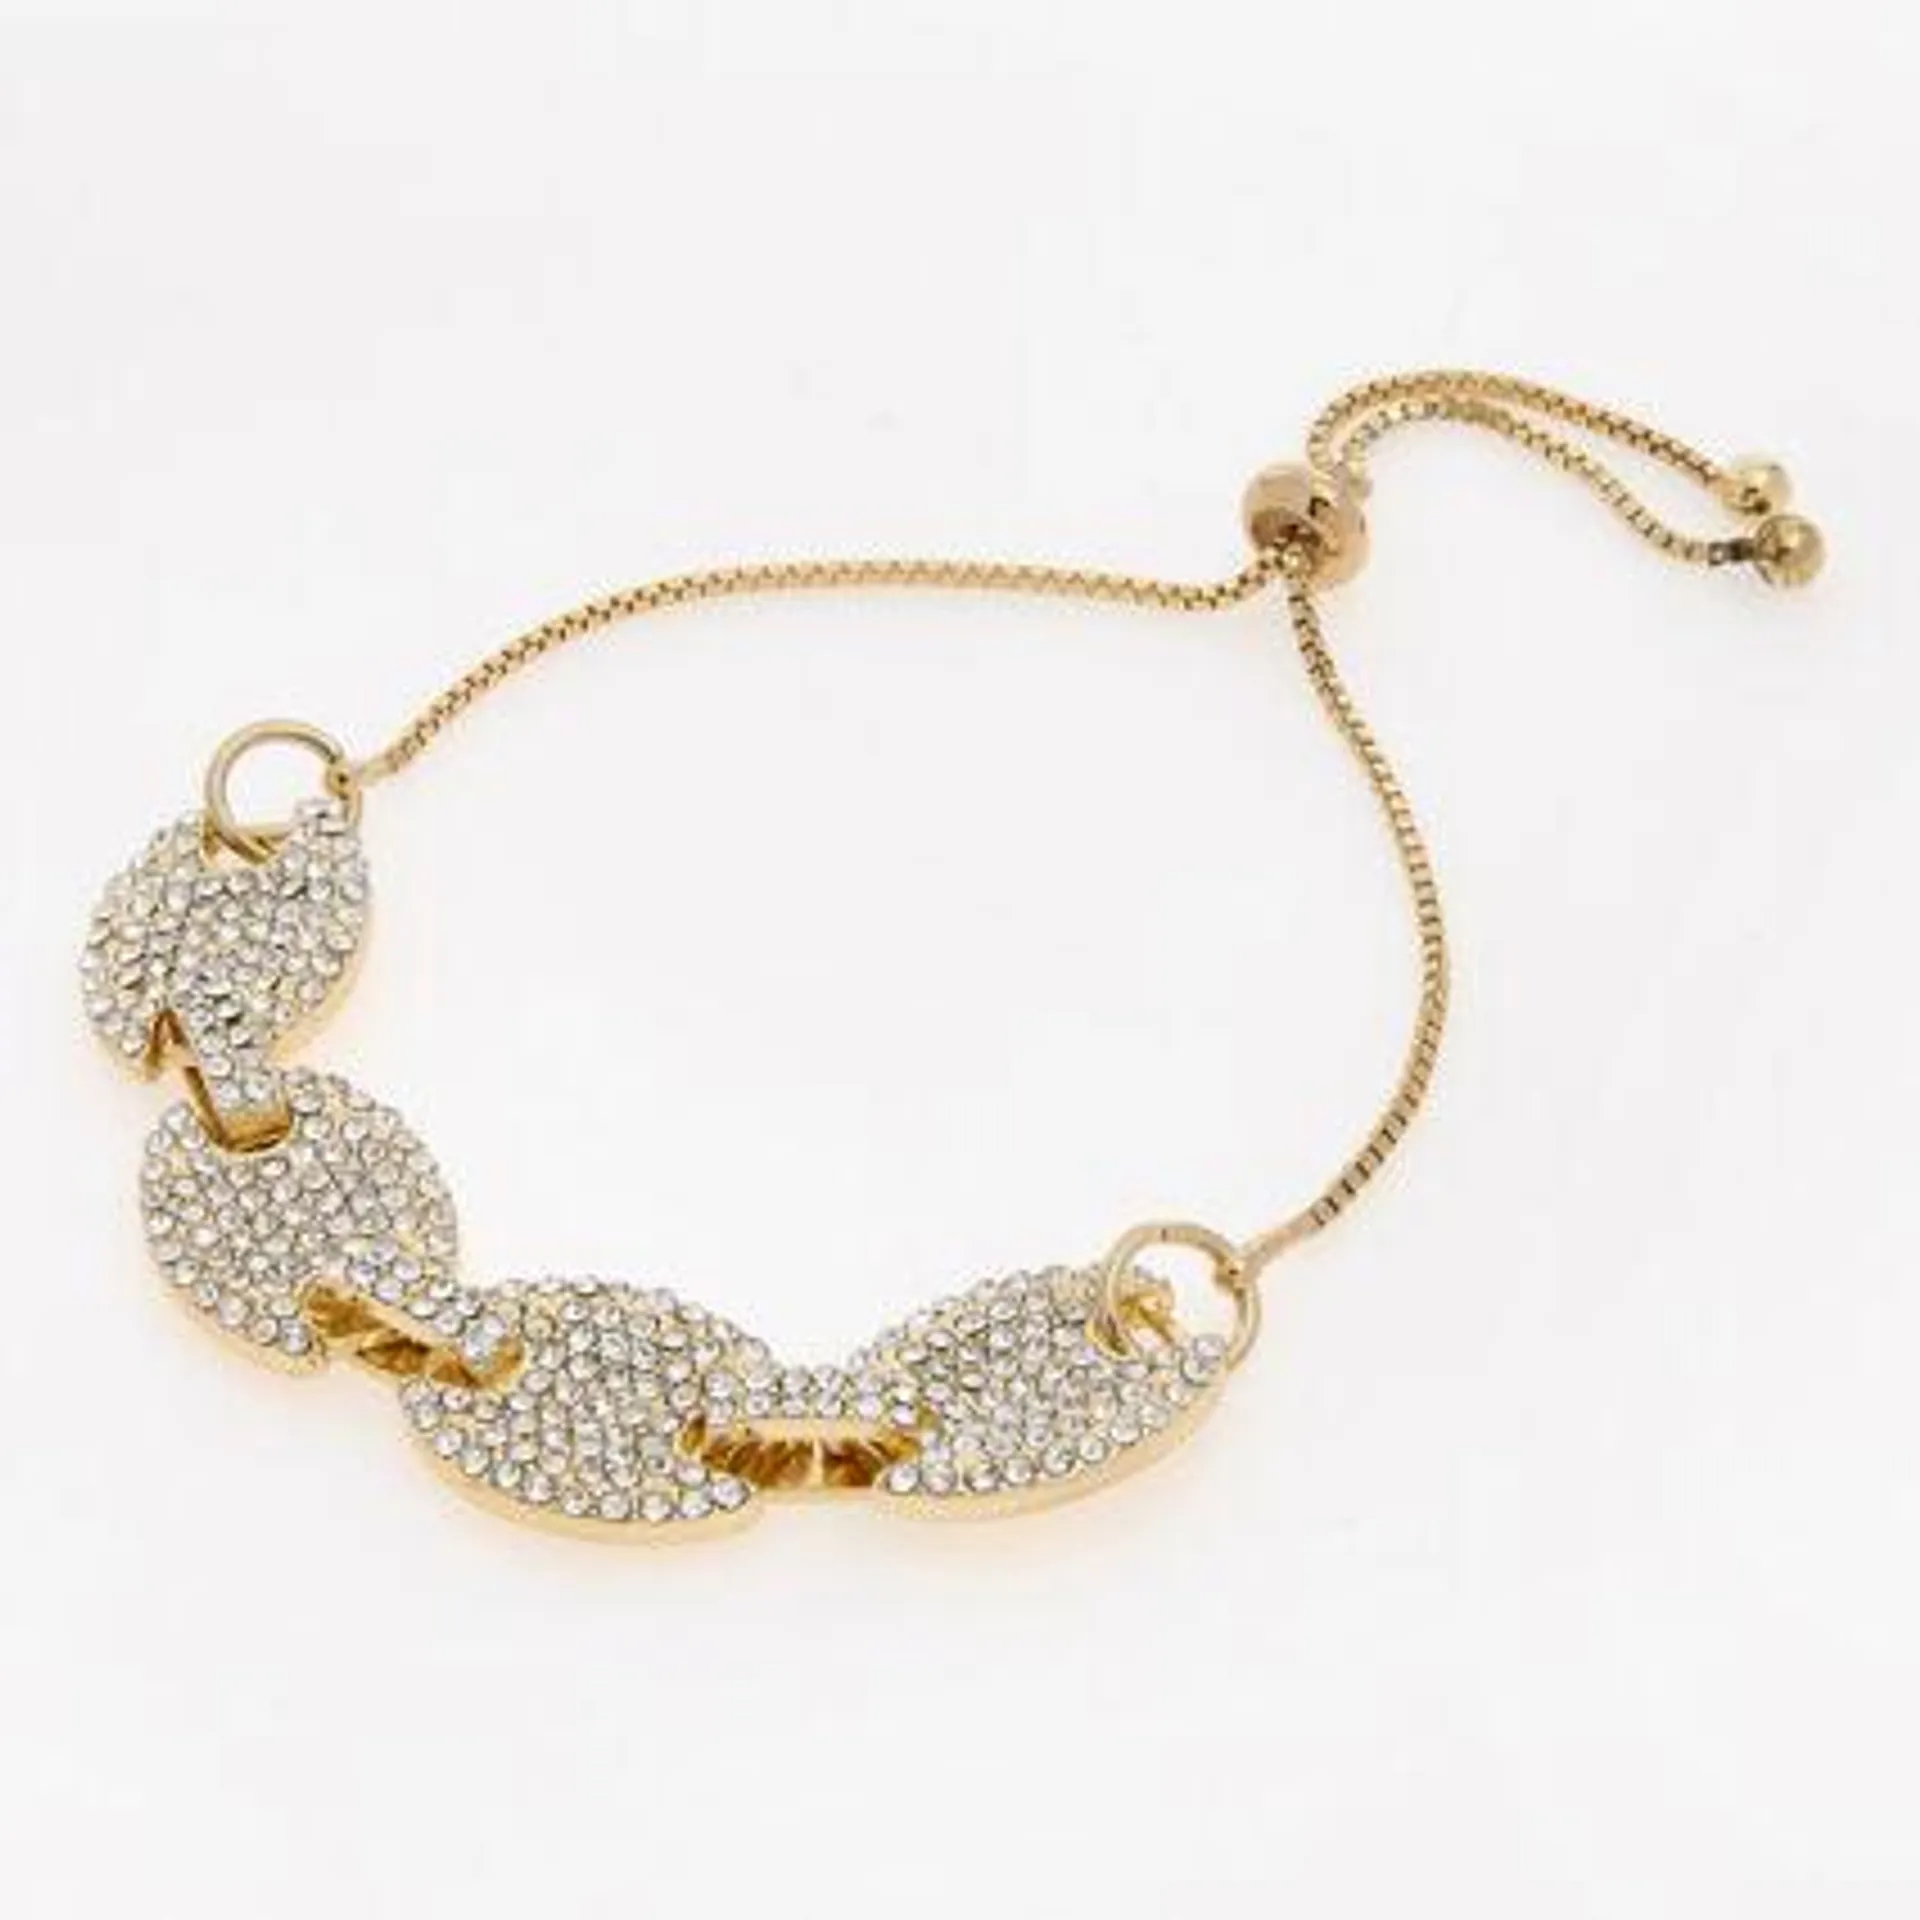 Gold Tone Embellished Bracelet